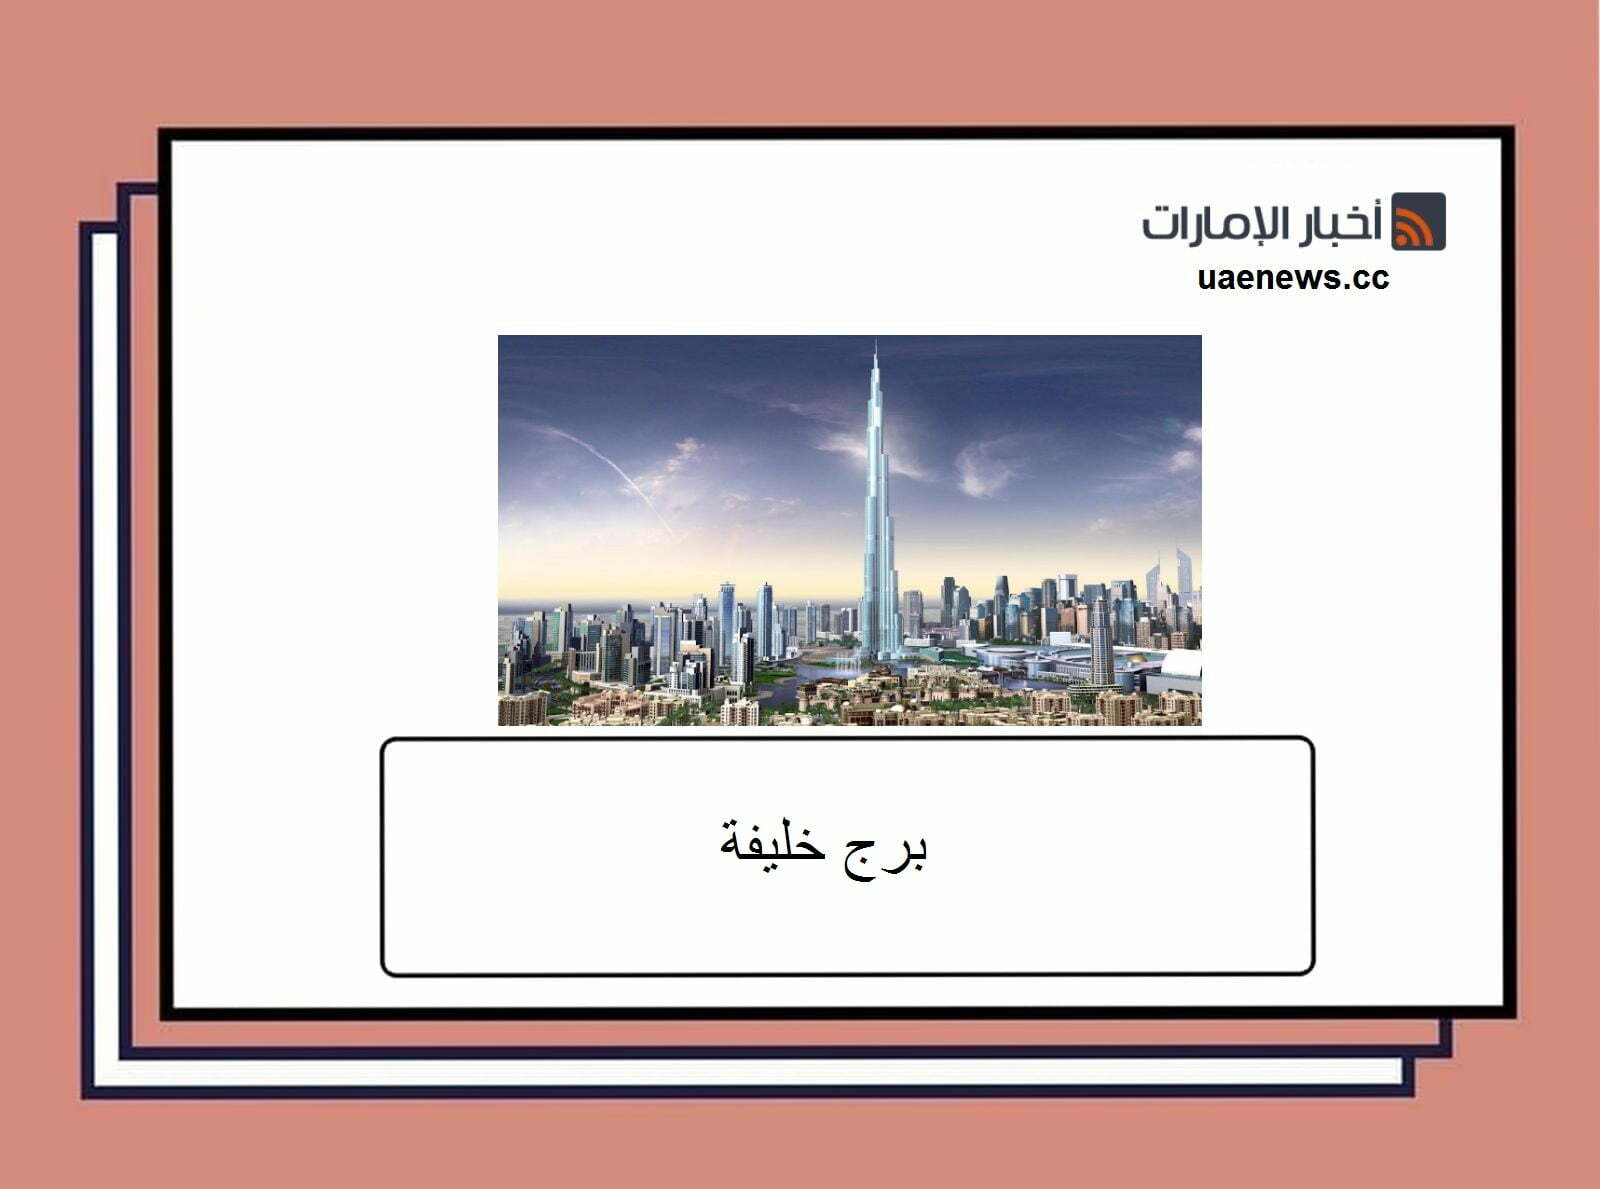 برج خليفة معلومات سياحية عنه وأهم الأنشطة